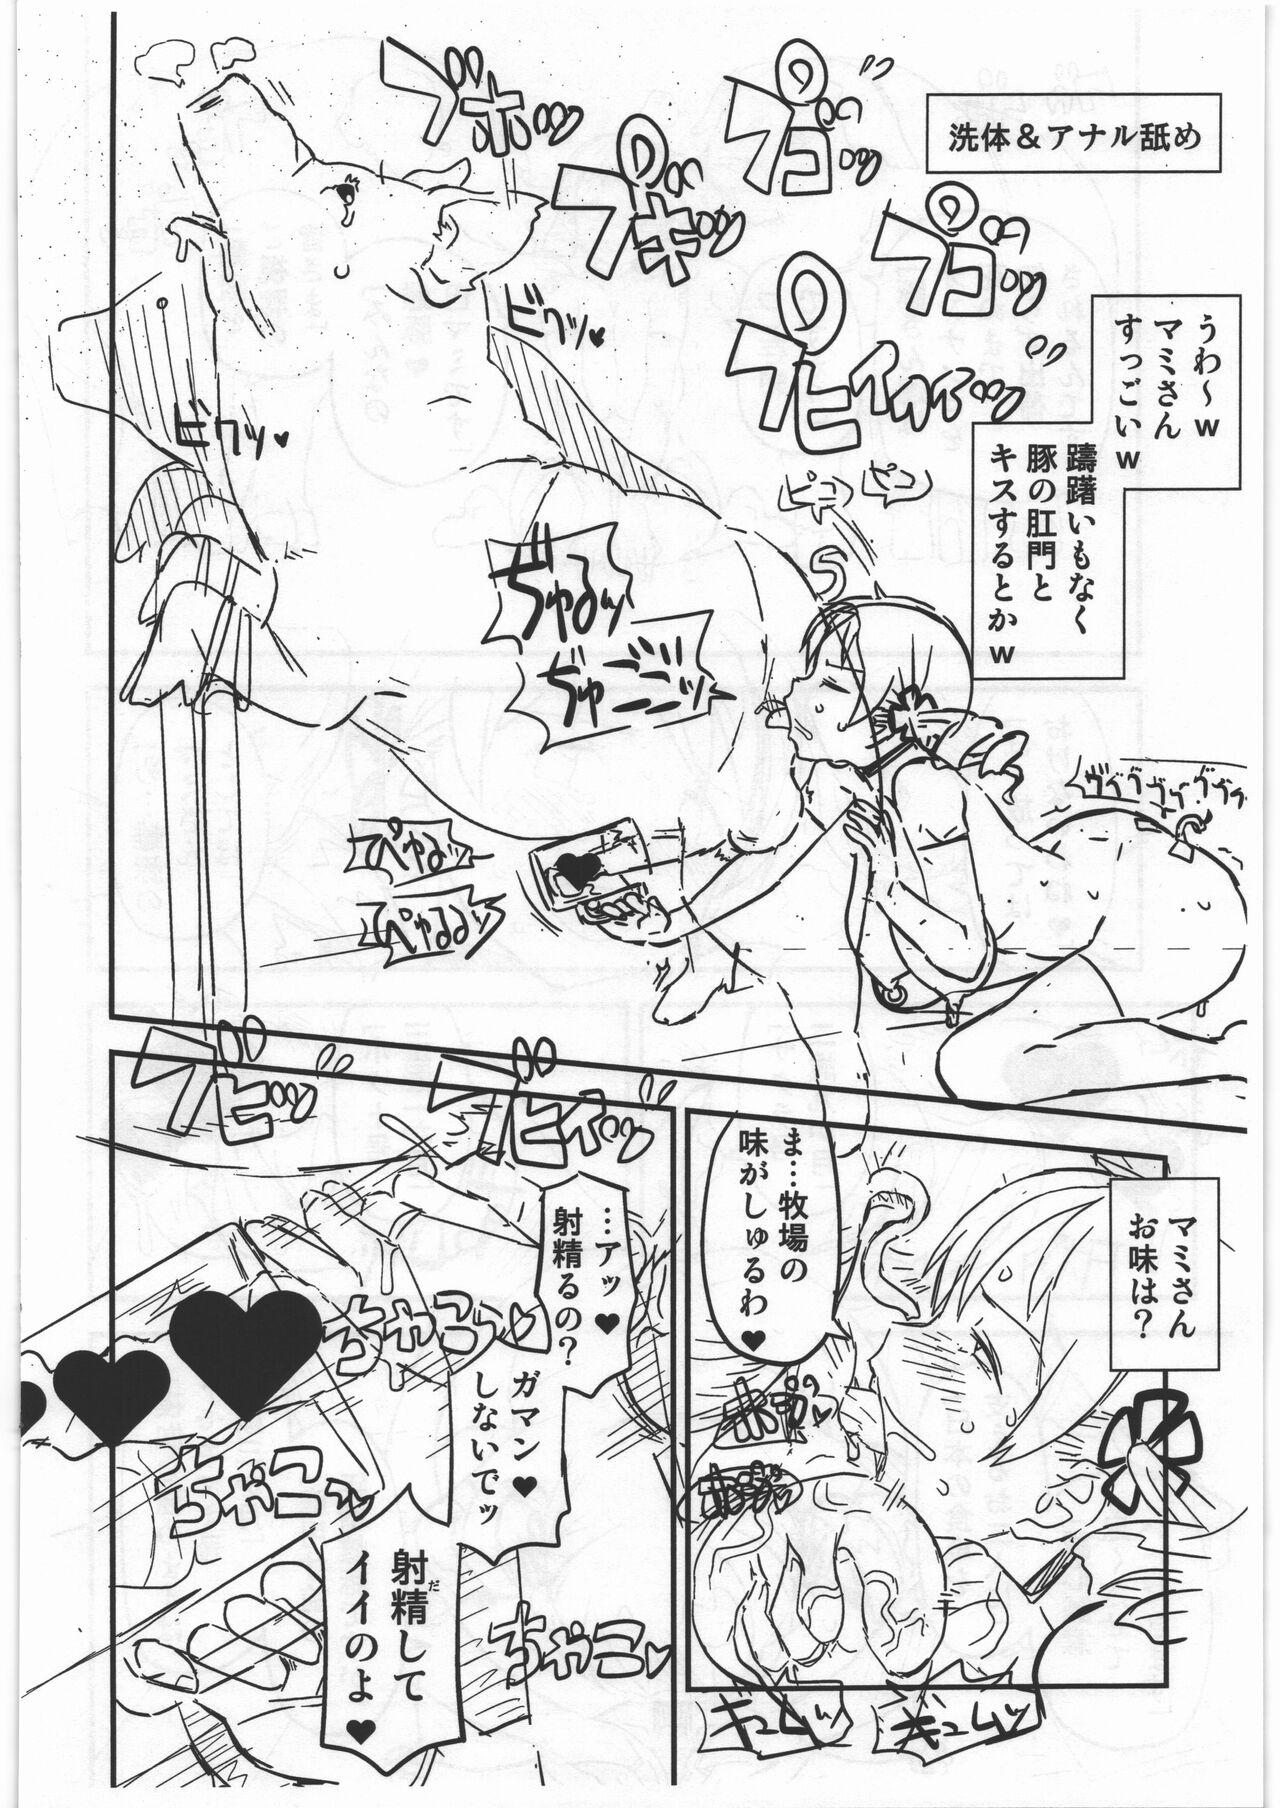 18yearsold CB:NG M★M - Puella magi madoka magica Monster hunter Hardfuck - Page 14